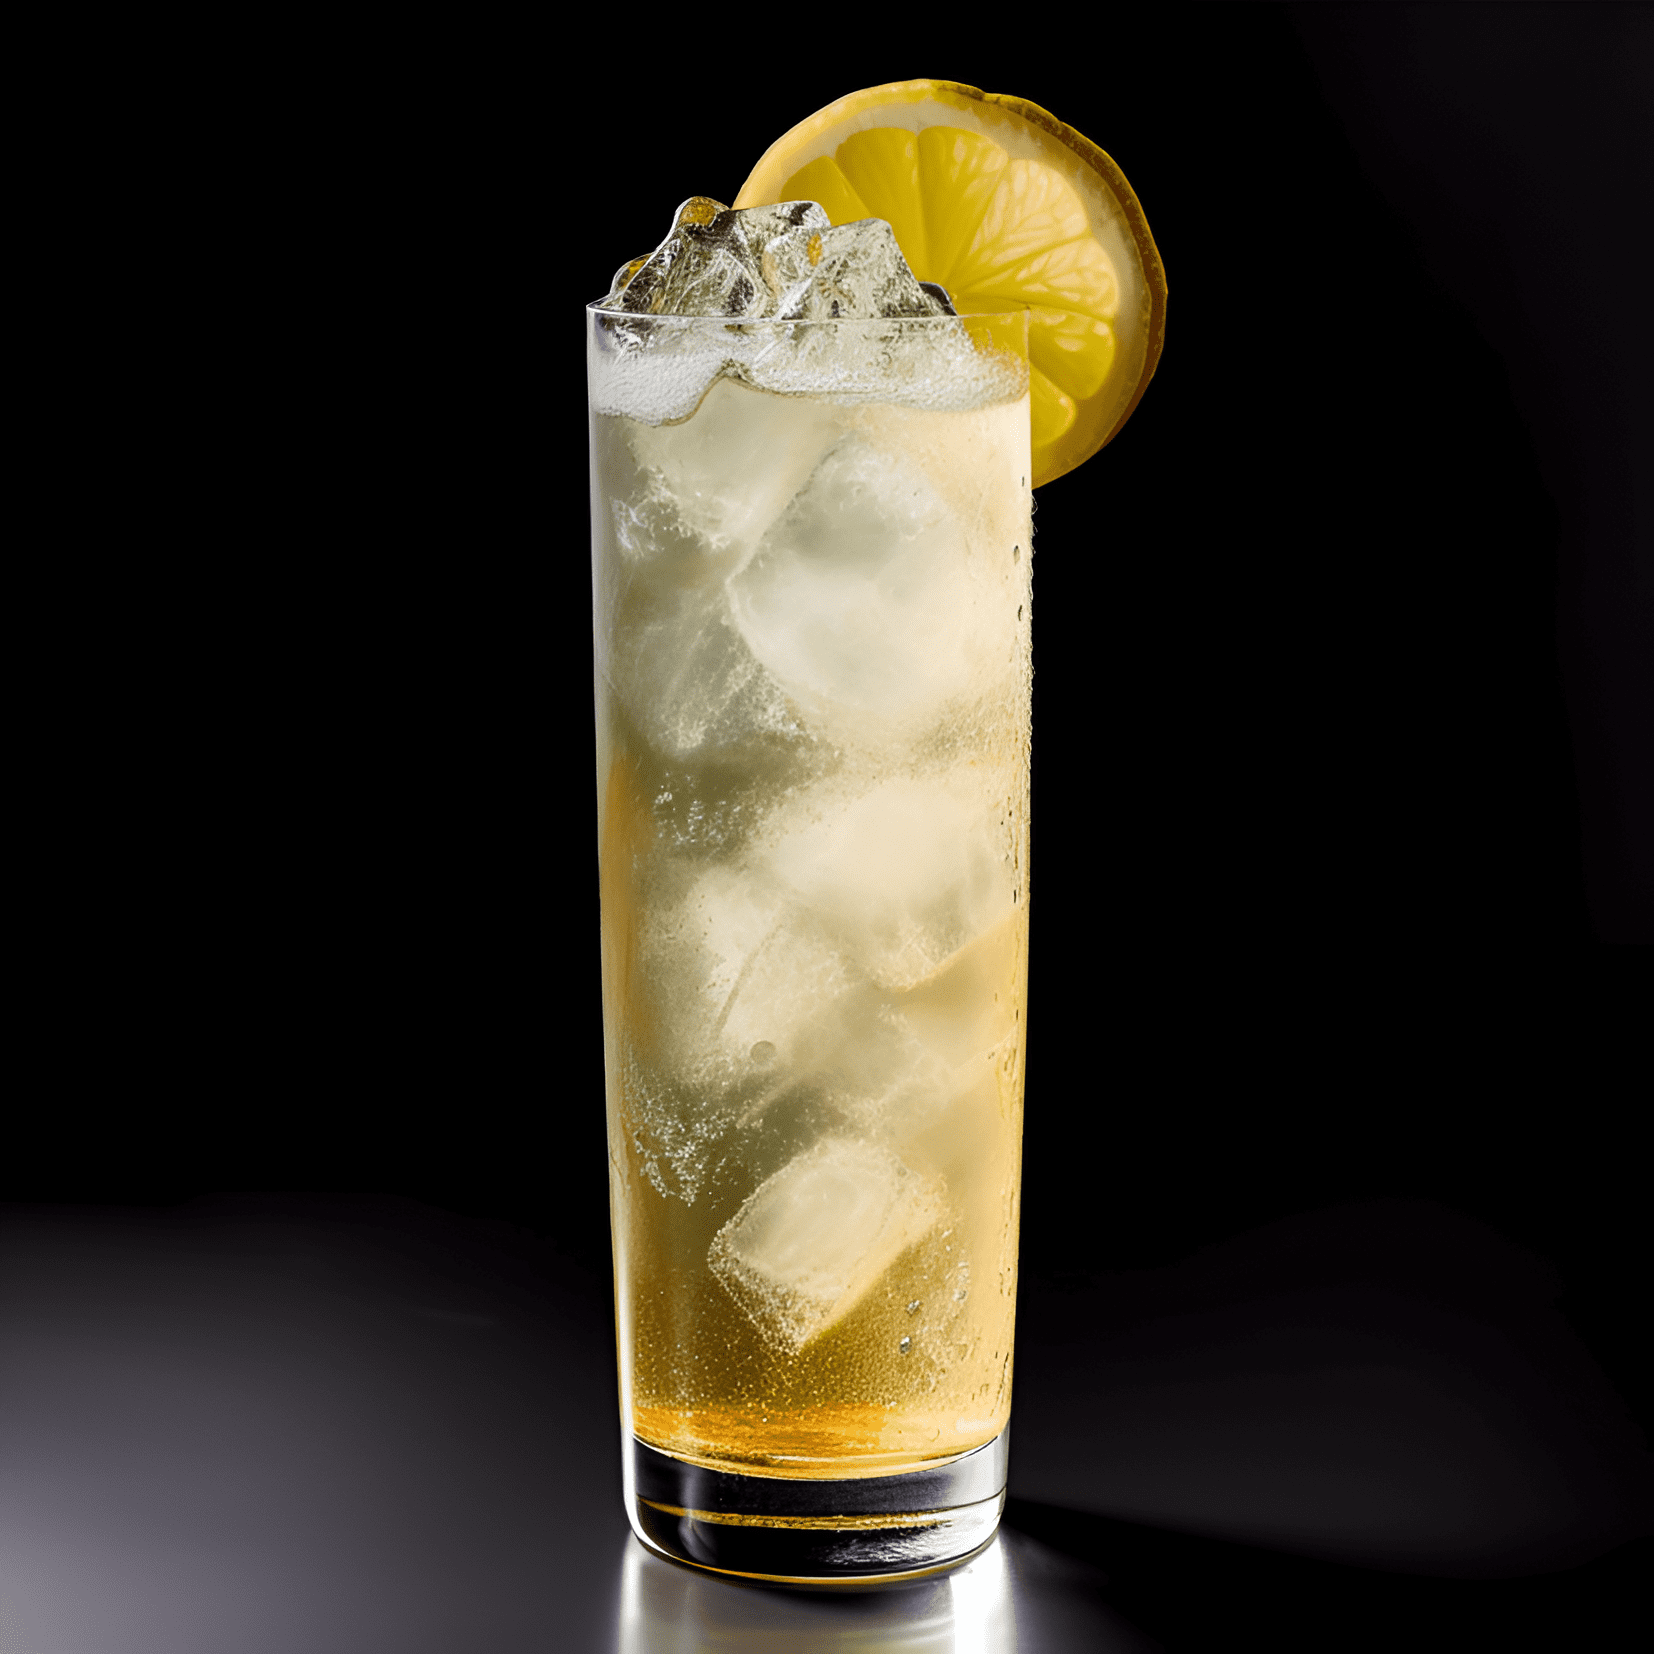 Presbiteriano Cóctel Receta - El cóctel Presbiteriano es una bebida bien equilibrada, refrescante y ligeramente efervescente. Tiene un sabor dulce sutil del ginger ale, un calor suave del whisky y un toque de acidez del jugo de limón. El perfil de sabor general es ligero, crujiente e vigorizante.